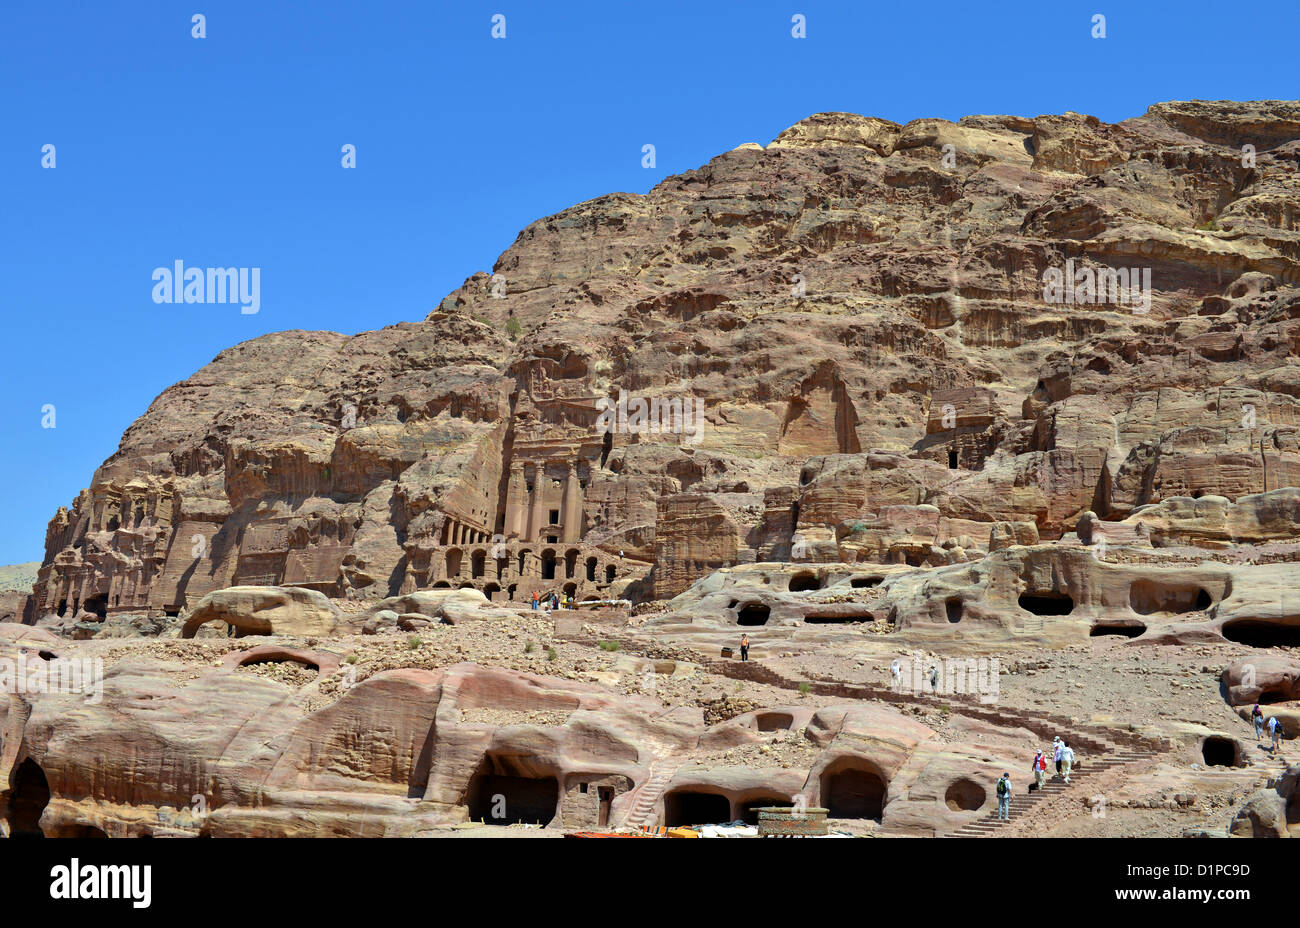 The Urn Tomb, Petra, Jordan. Stock Photo